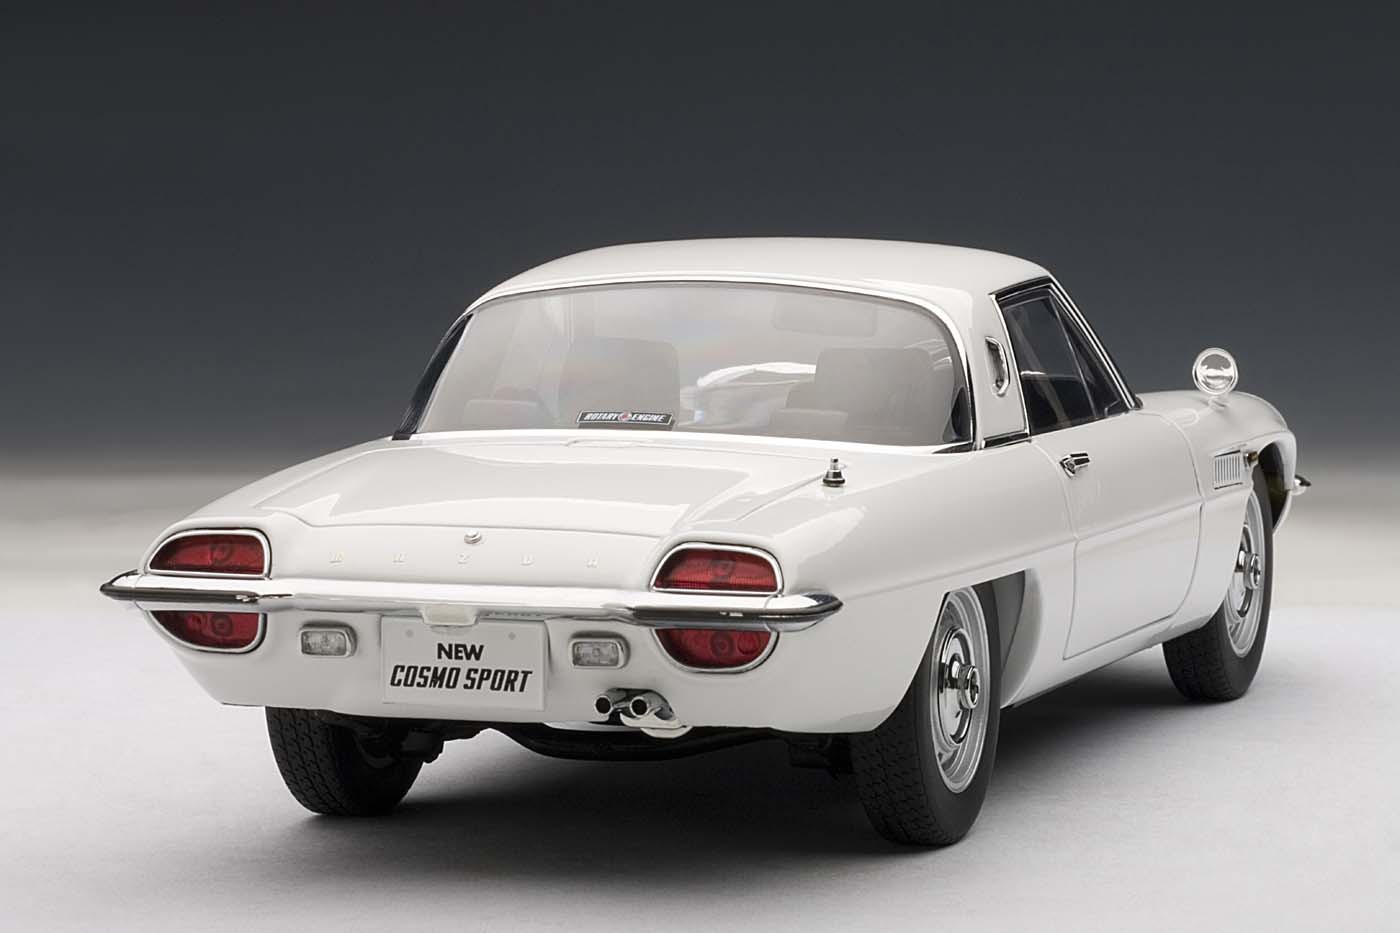 Mazda Cosmo Sport, White AUTOart 75931 die-cast scale model 1:18